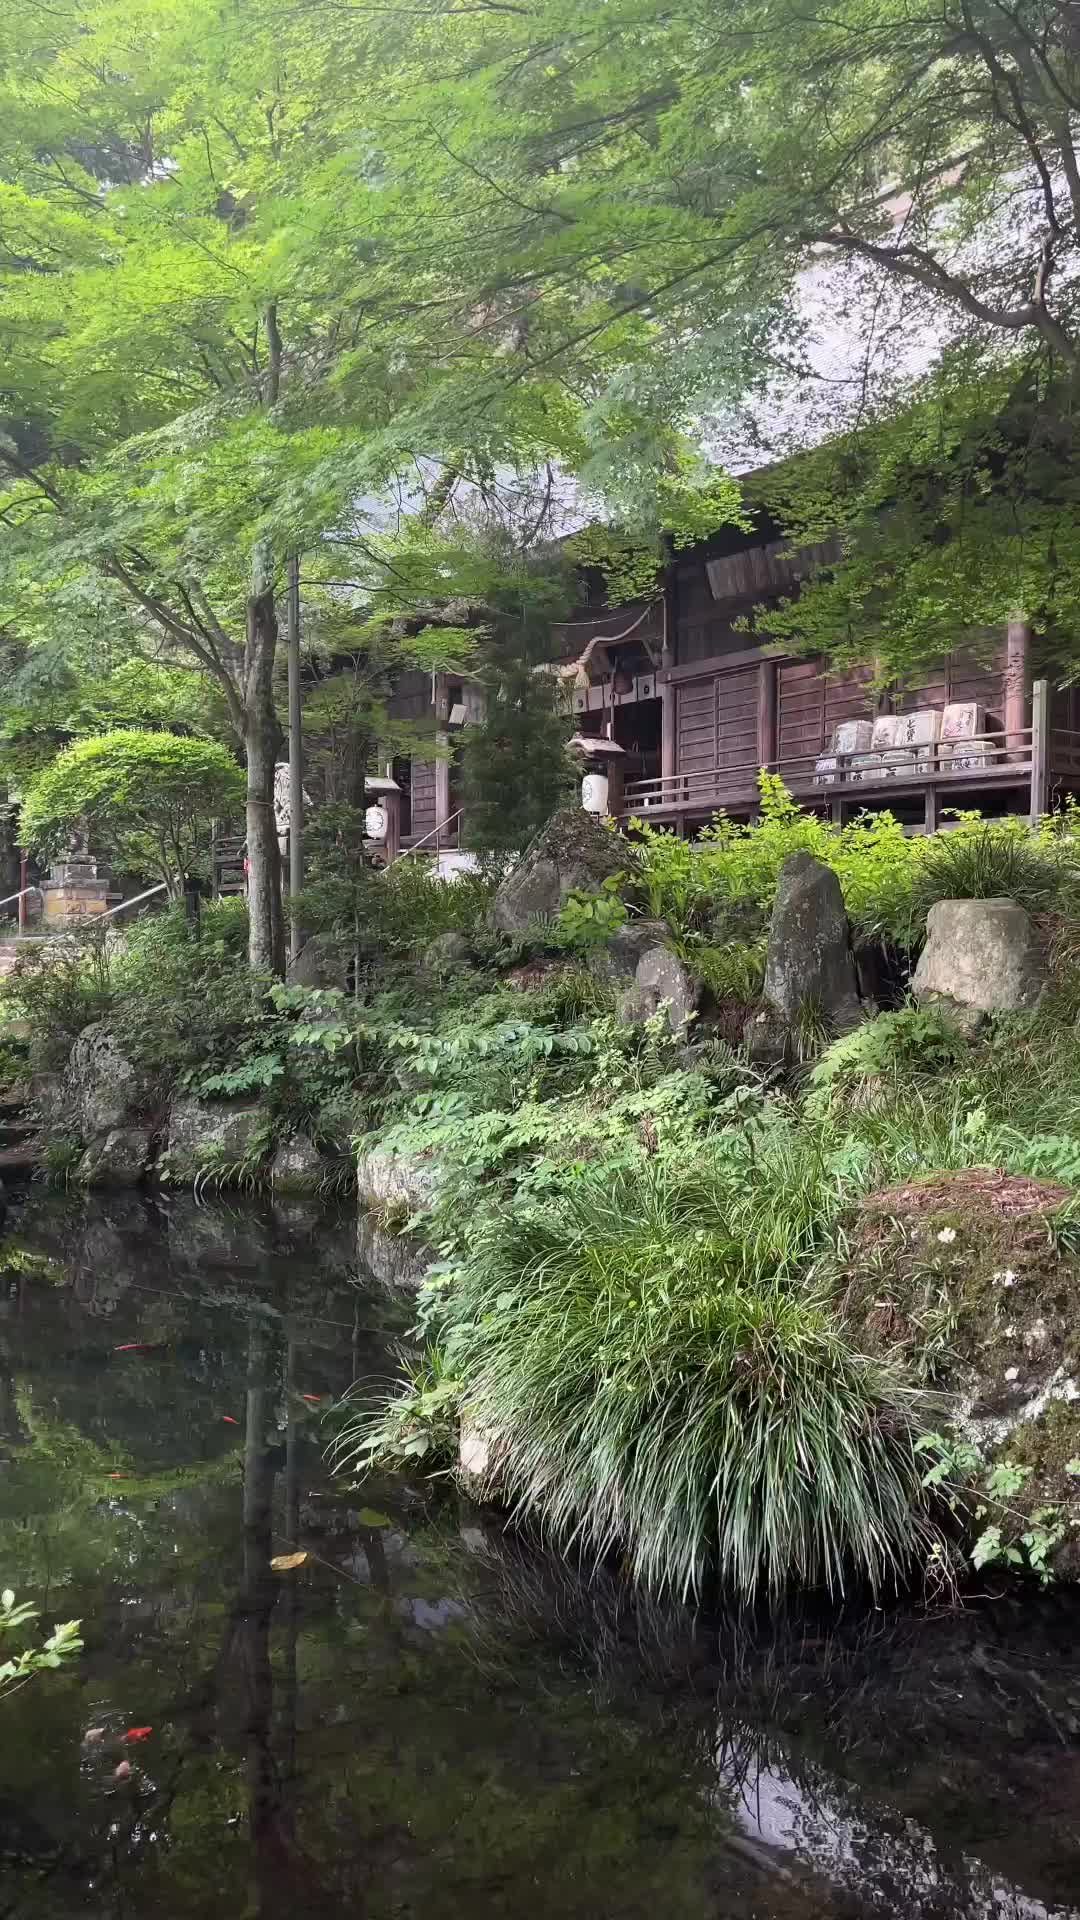 Discover Tranquility at Kawaguchi Asama Shrine, Japan